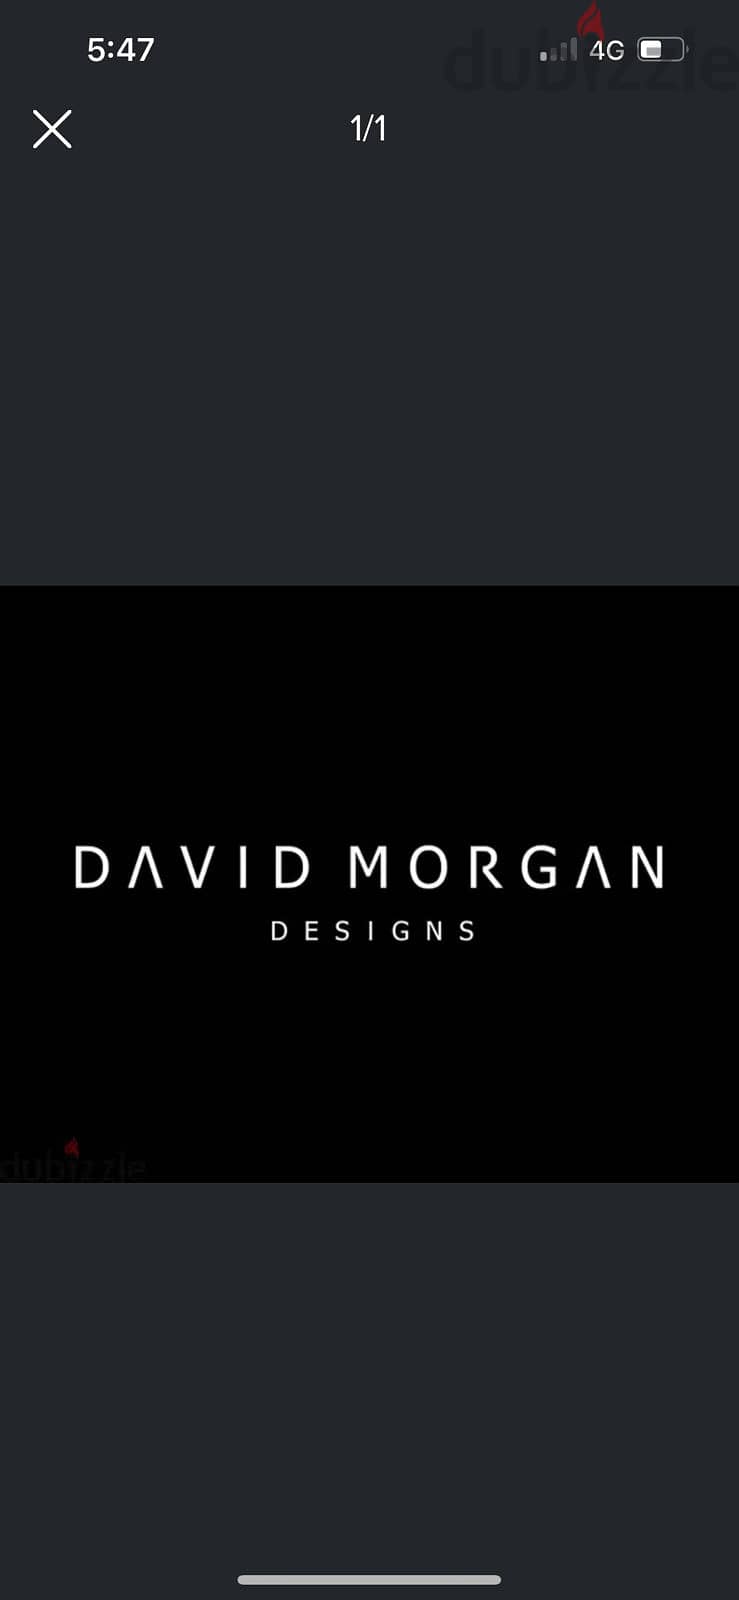 مطلوب سيلز Indoor sales لمعرض David Morgan Designs للاثاث 0